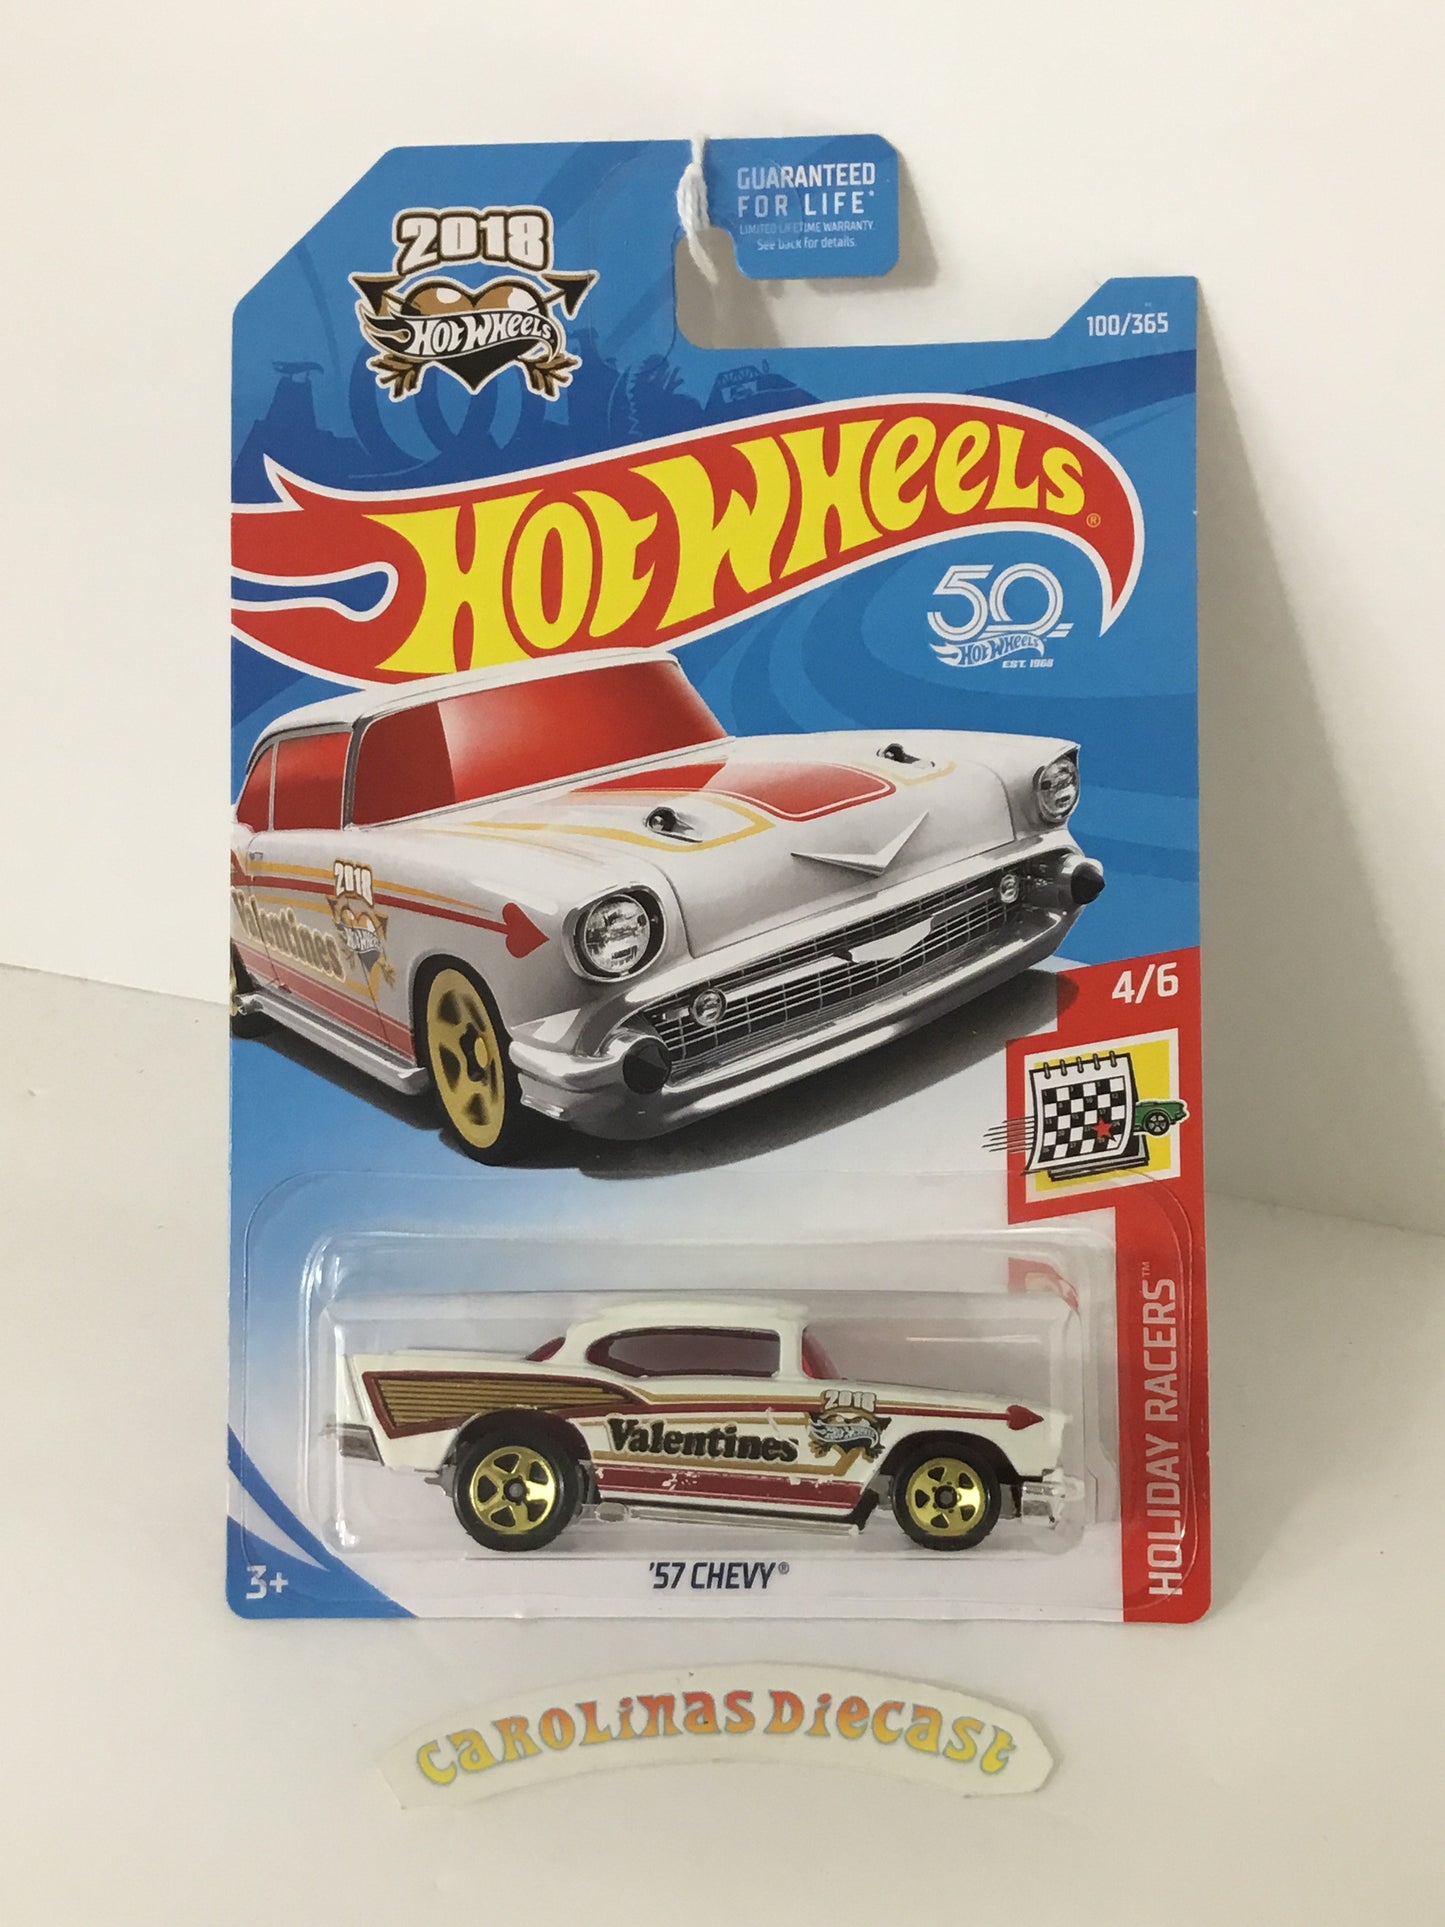 2018 Hot Wheels #100 57 Chevy valentines W3